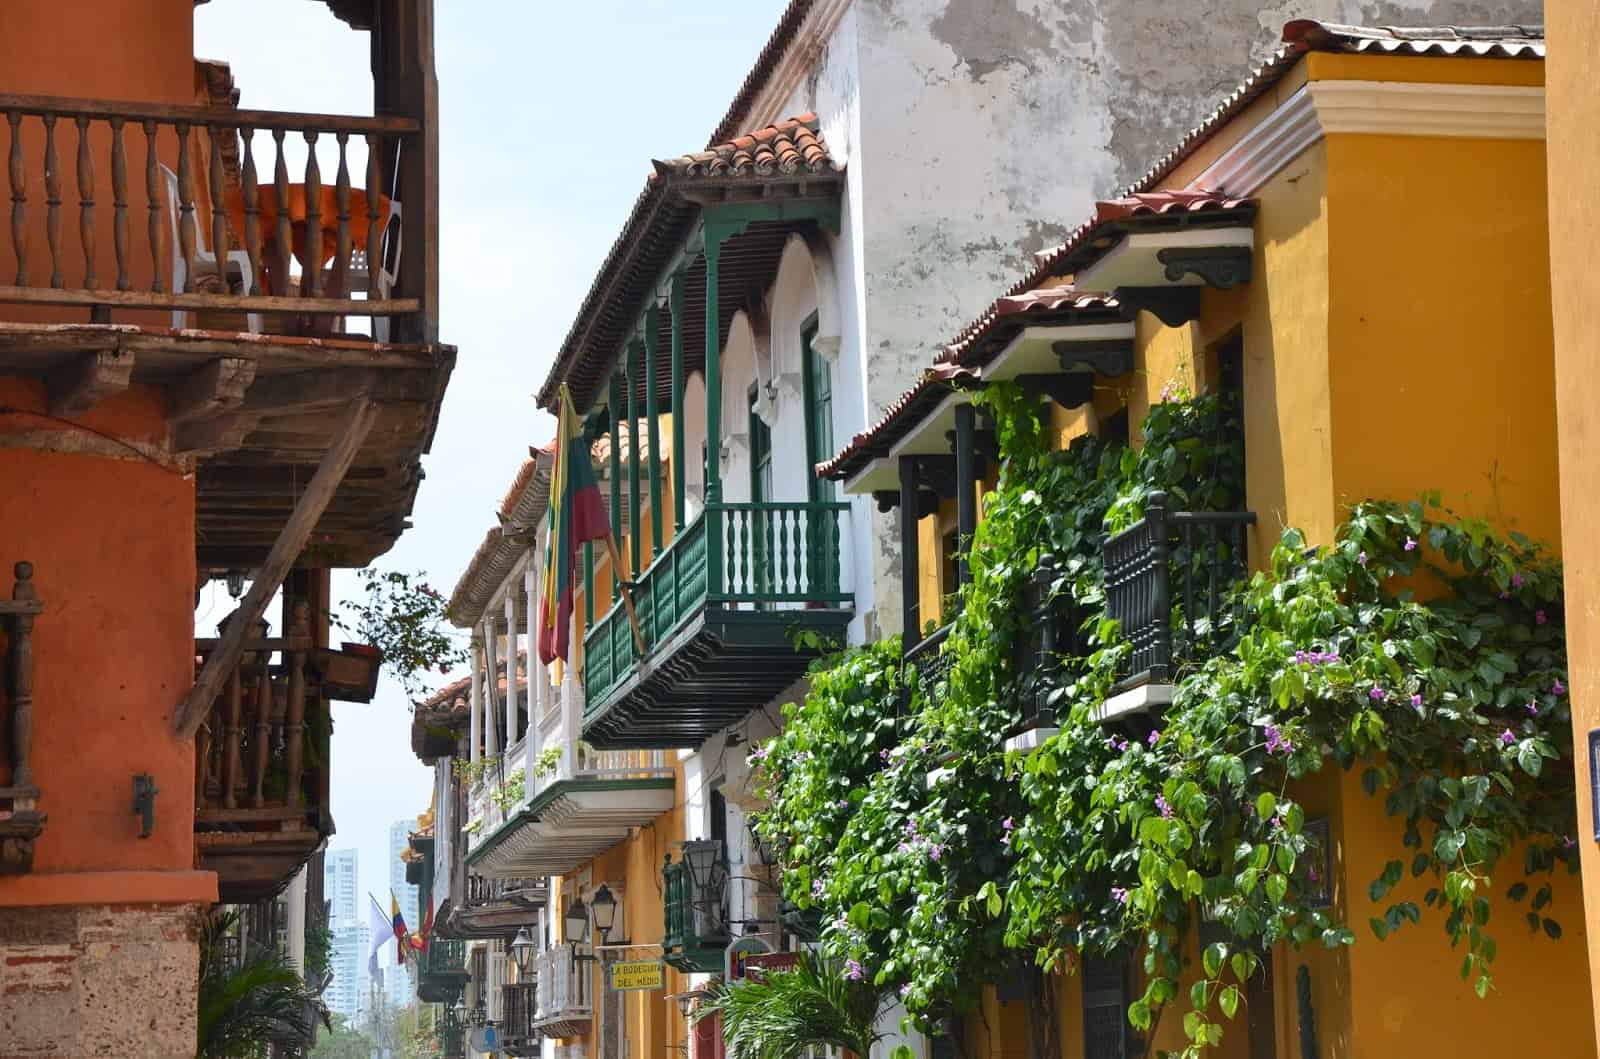 Calle de Santo Domingo in El Centro, Cartagena, Colombia